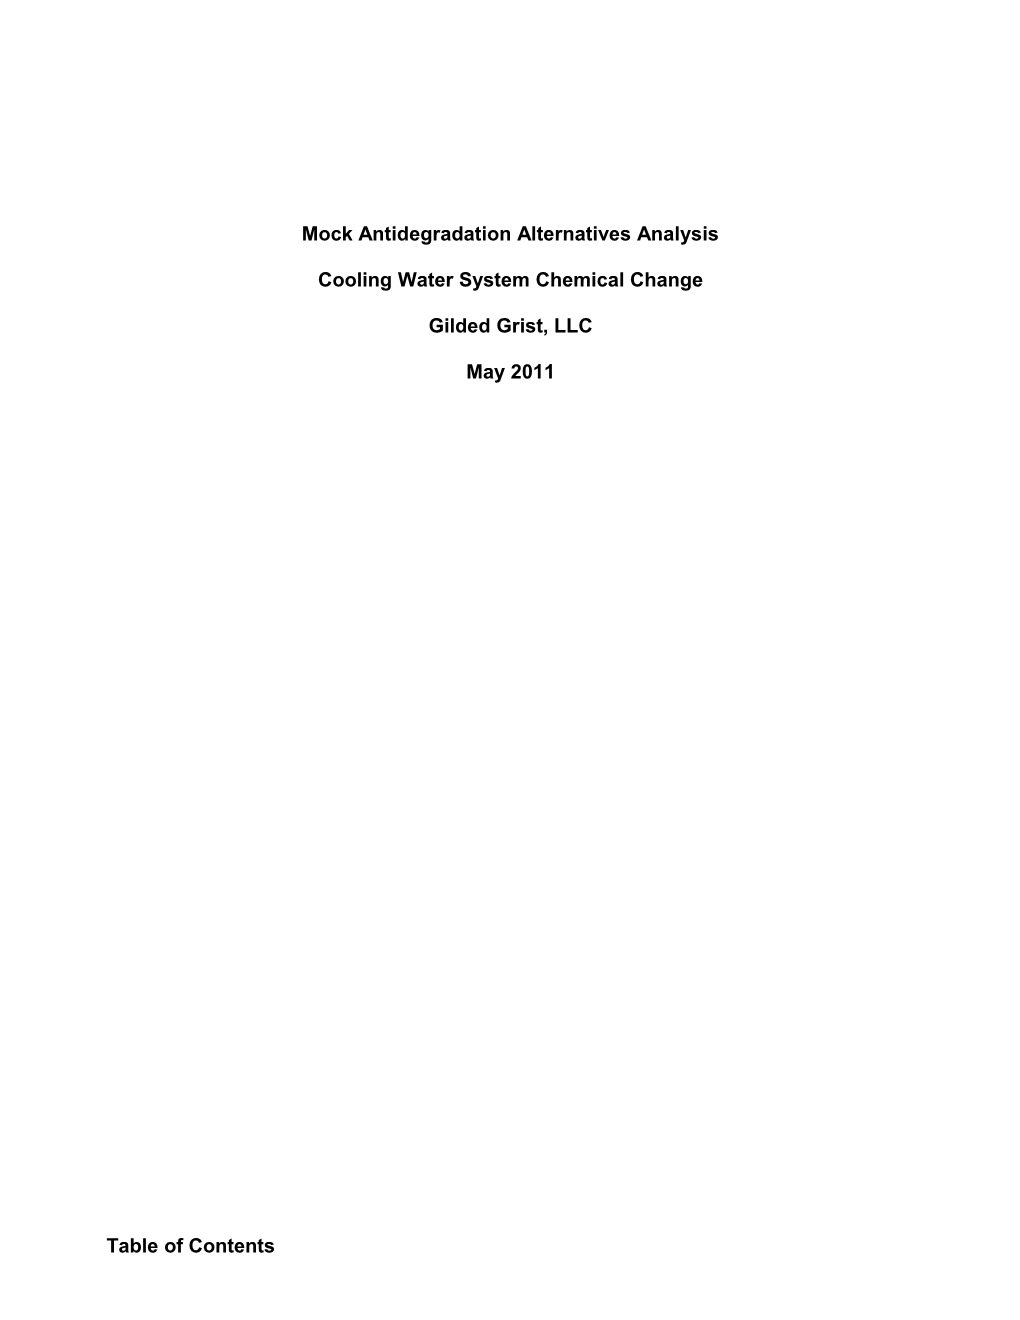 Antideg Alternatives Analysis Example (Existing Municipal POTW)